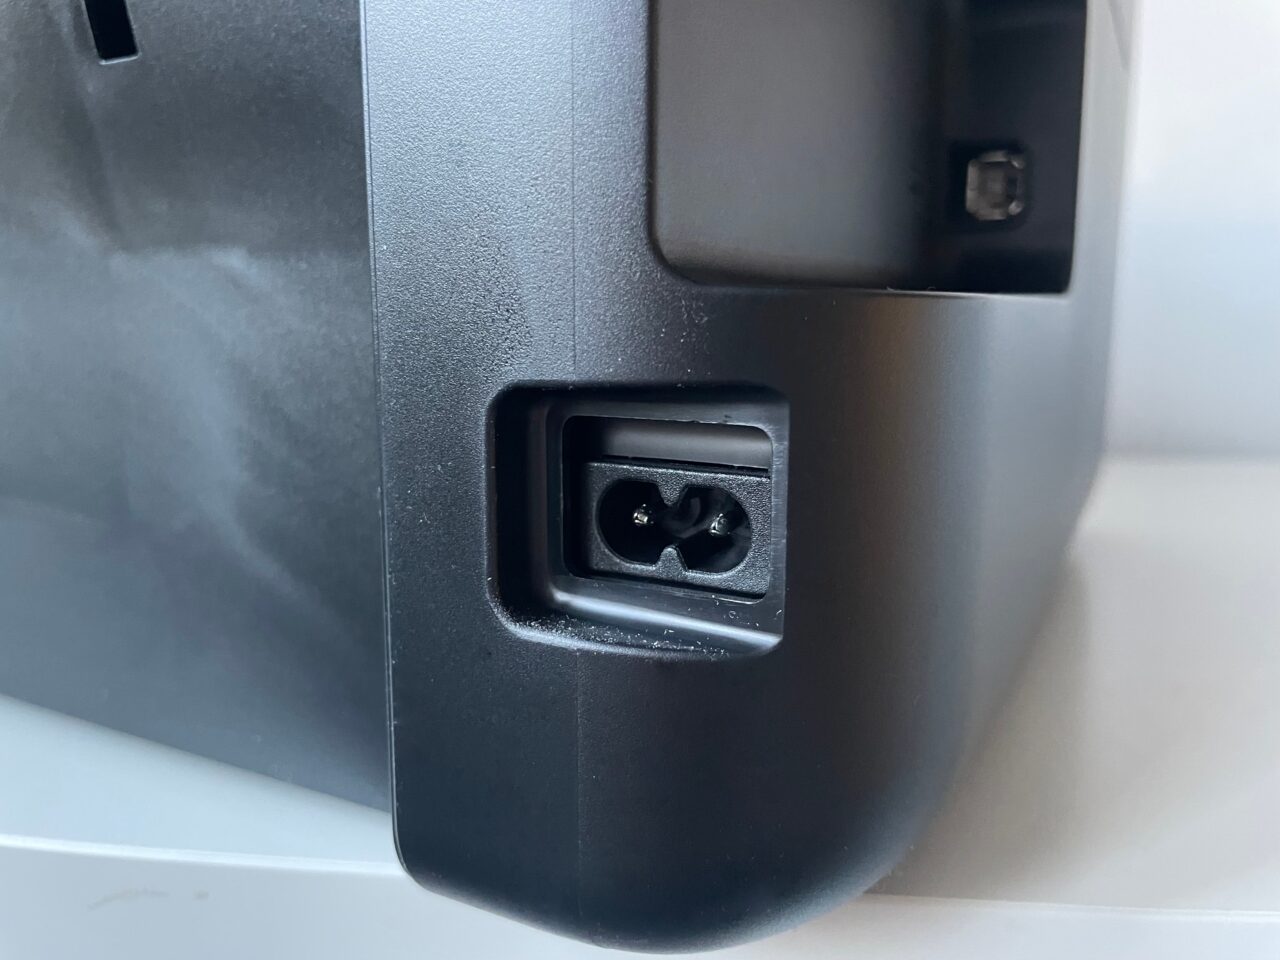 recenzja epson ecotank l3251. Zdjęcie tyłu urządzenia elektronicznego z widocznym portem zasilania typu trójząb oraz innym, mniejszym portem.